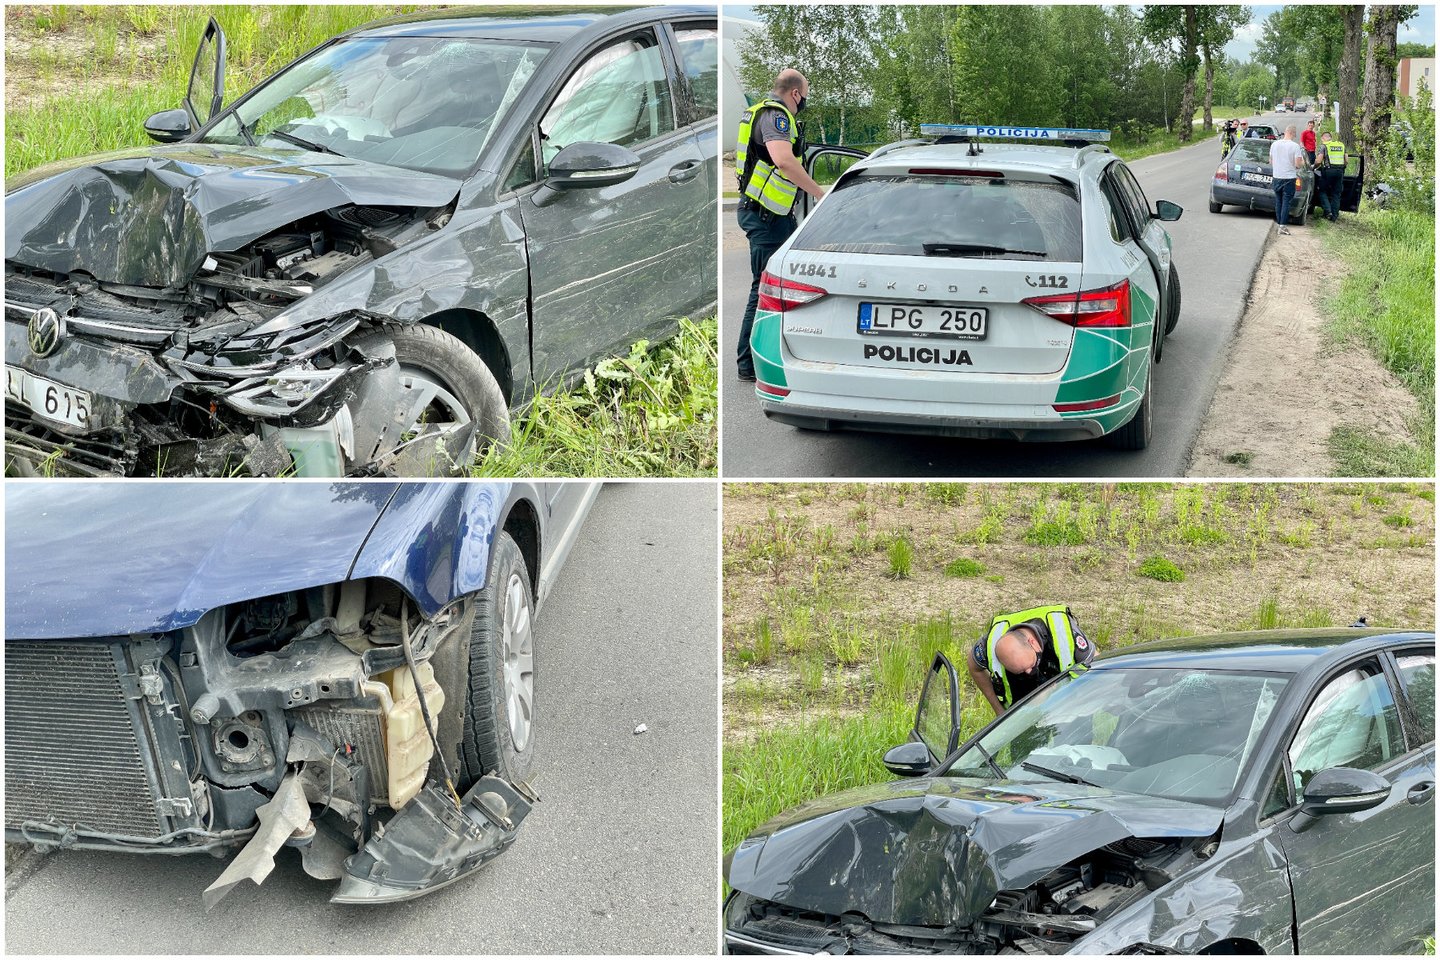 Vilniaus pakraštyje automobilis trenkėsi į medį, pranešama apie nukentėjusį vaiką.<br> lrytas.lt nuotr.